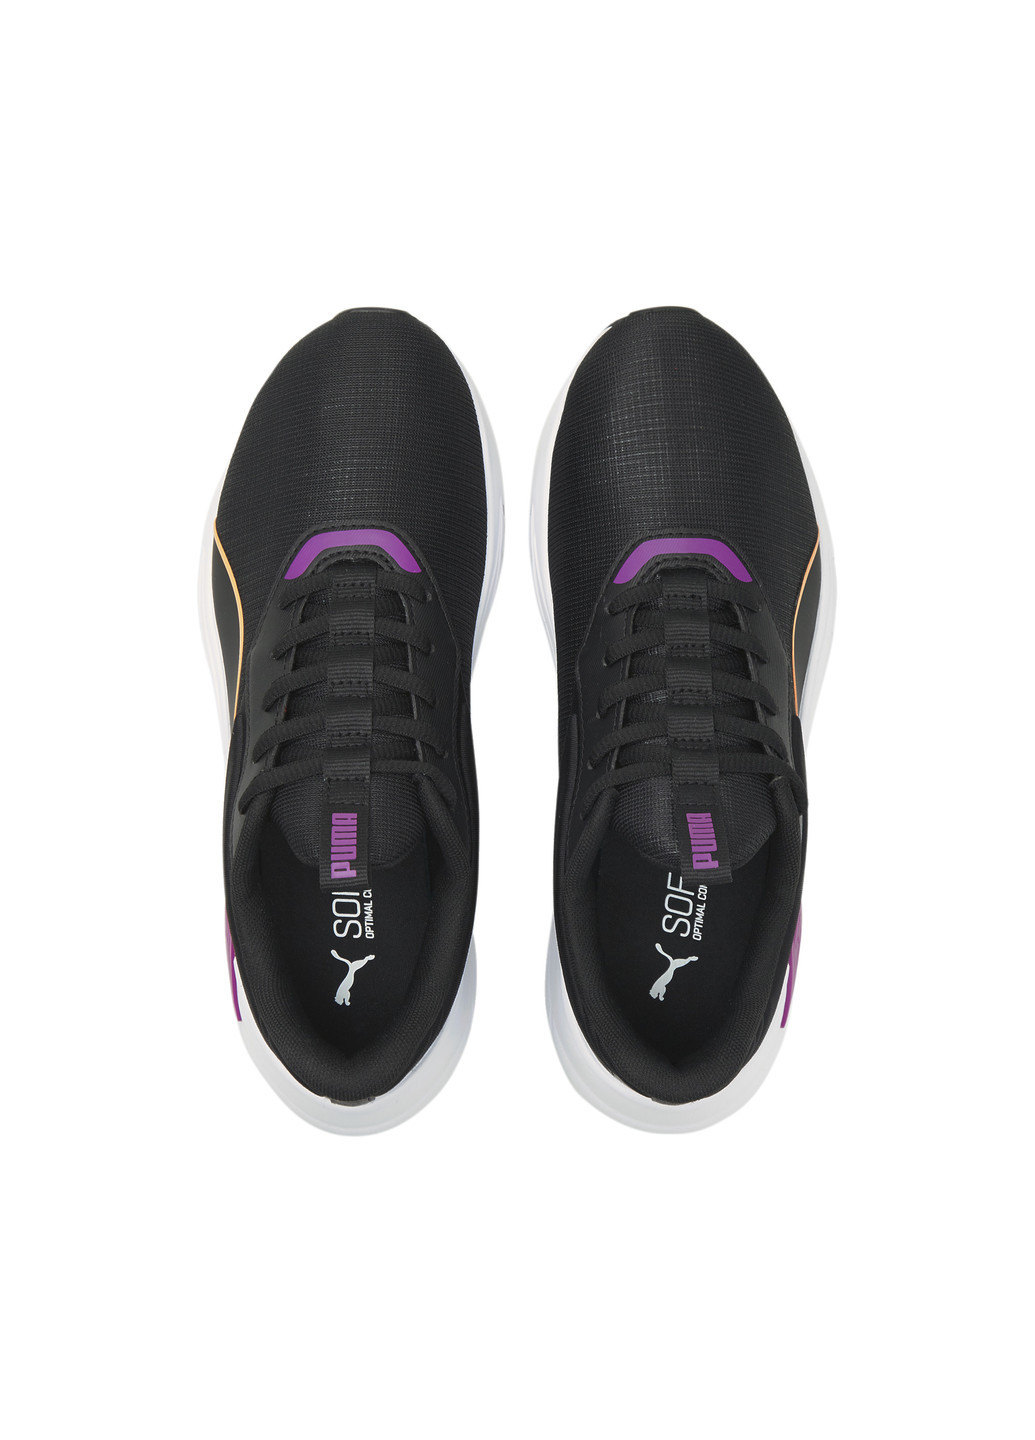 Черные всесезонные кроссовки lex women's training shoes Puma